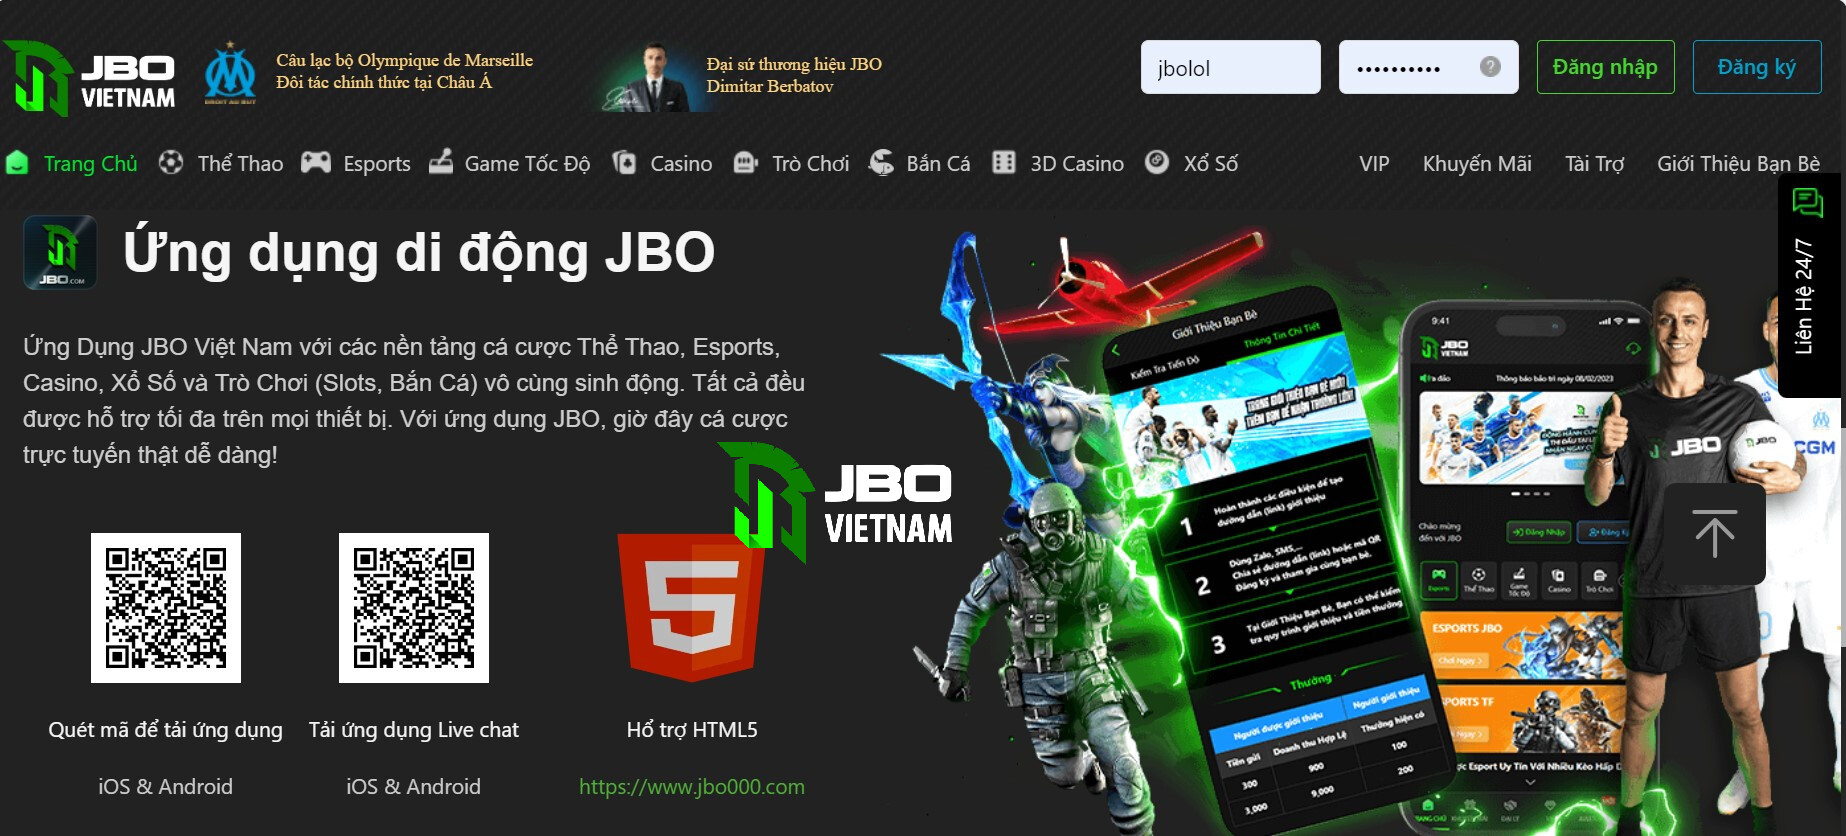 Hướng dẫn tải app JBO cho điện thoại Android - iOS